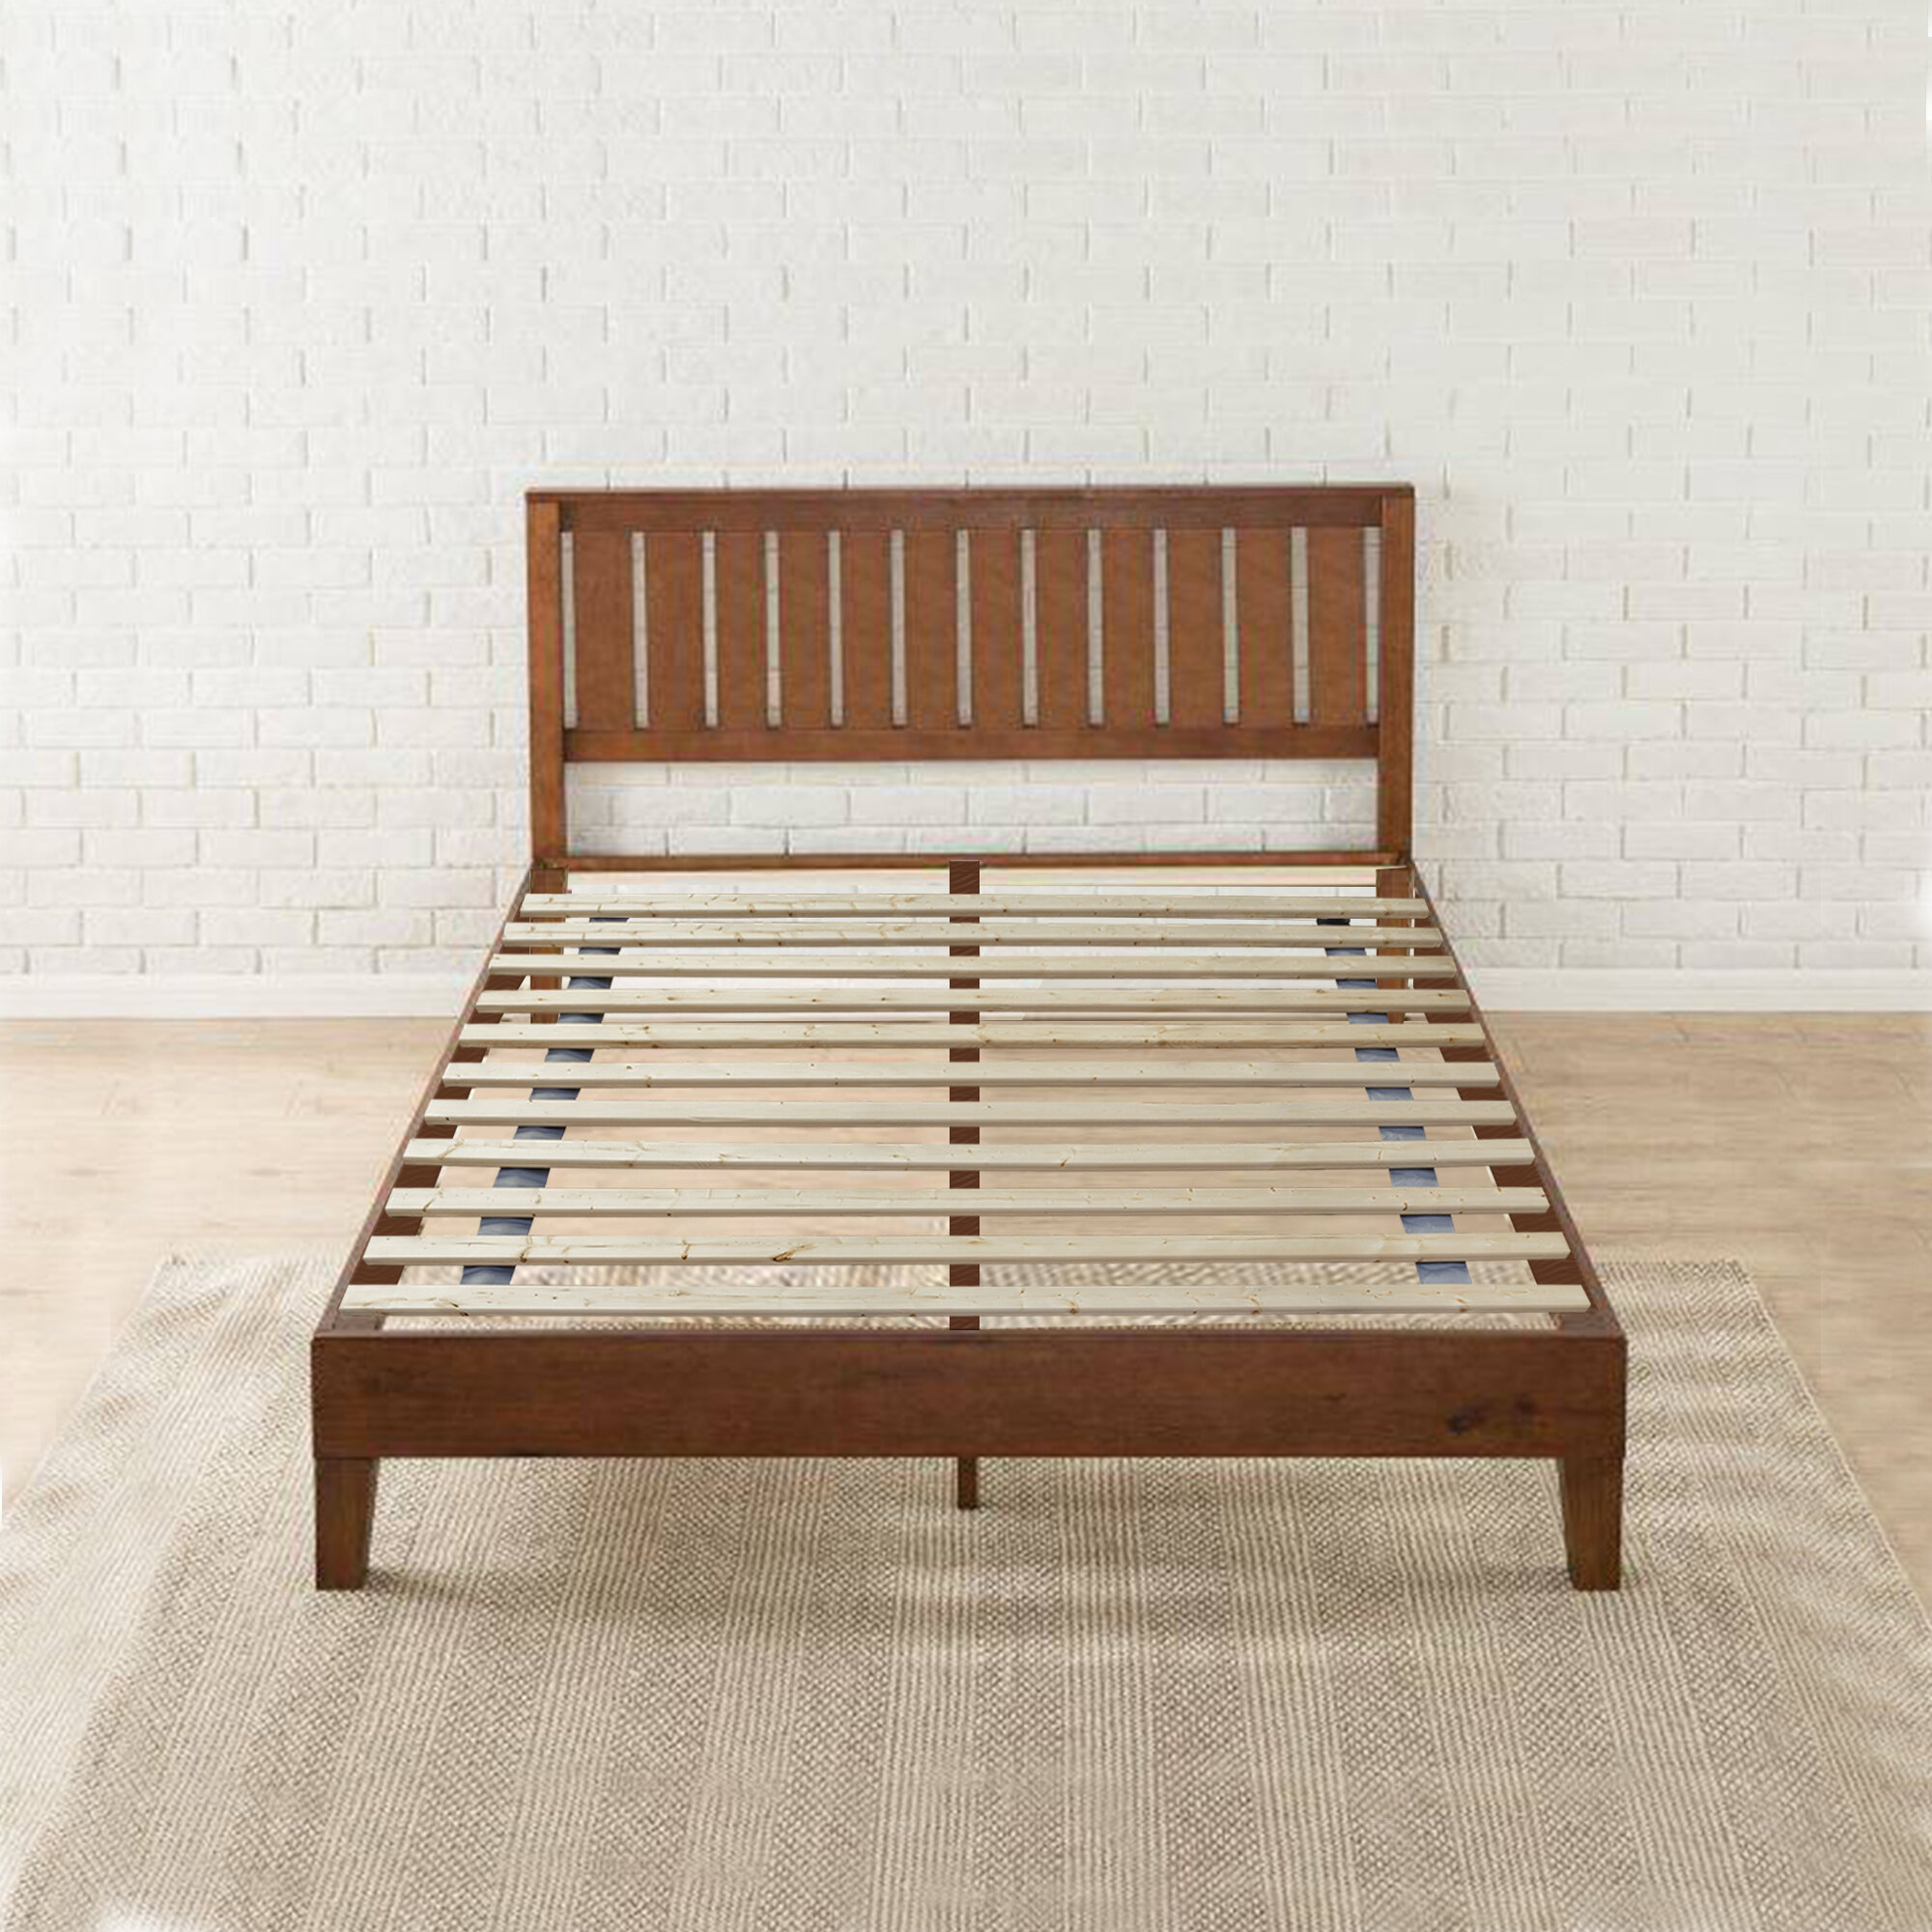 wooden bed slats queen